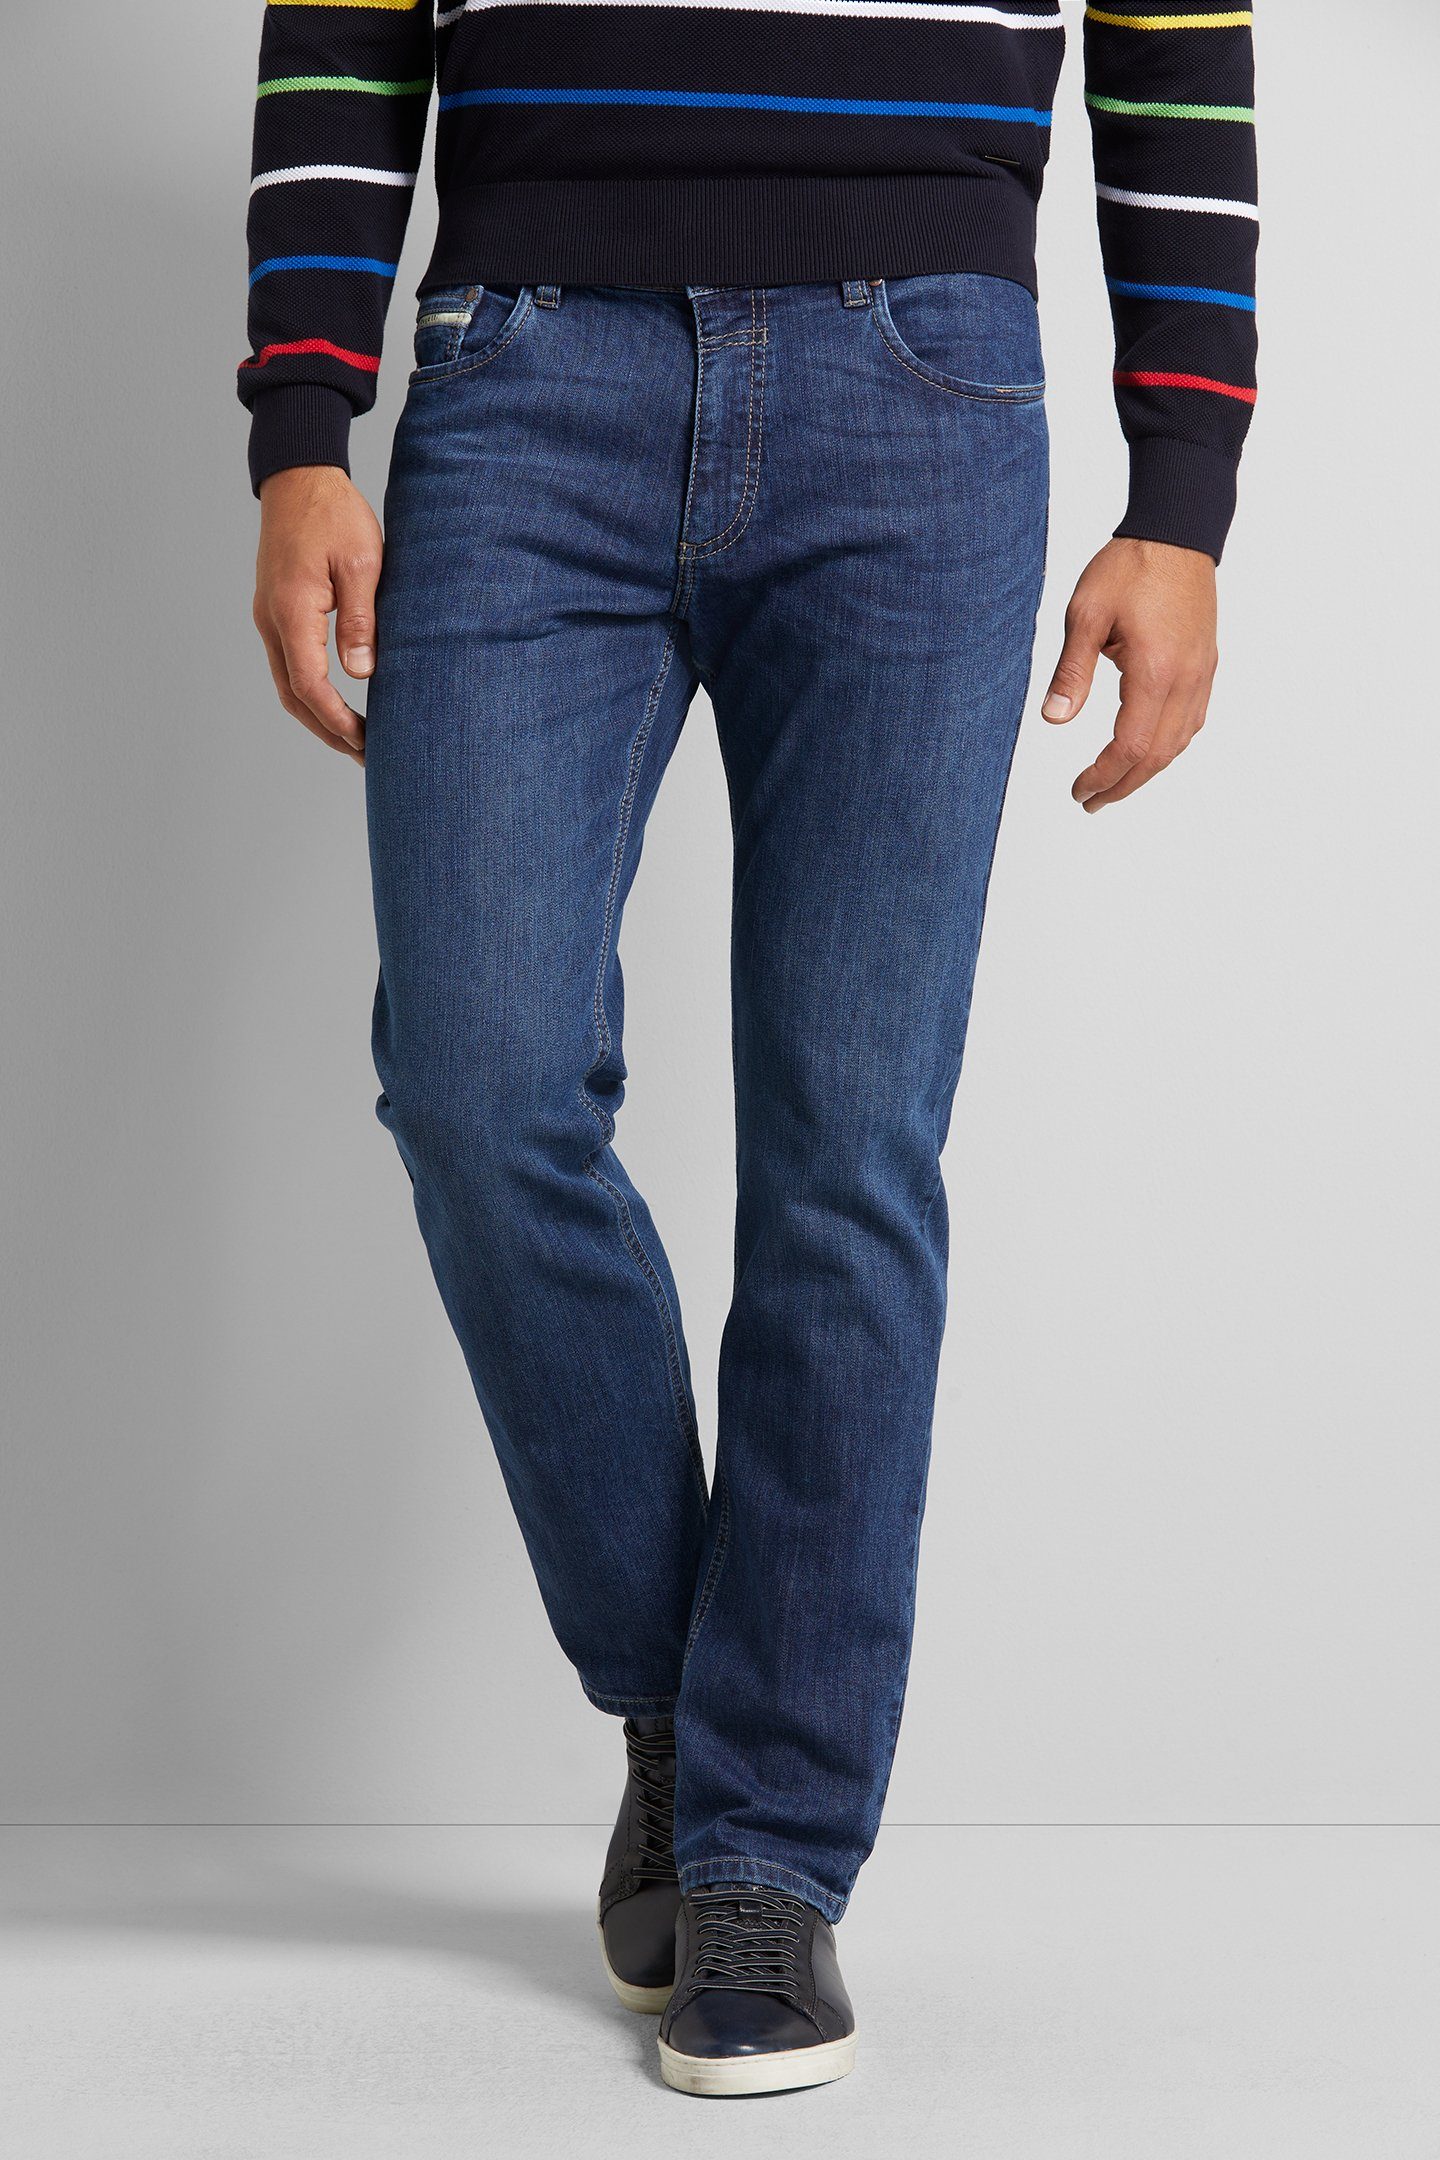 bugatti 5-Pocket-Jeans Gürtelschlaufenbund mit Zip-fly, Mit Elasthan, für  die perfekte Passform